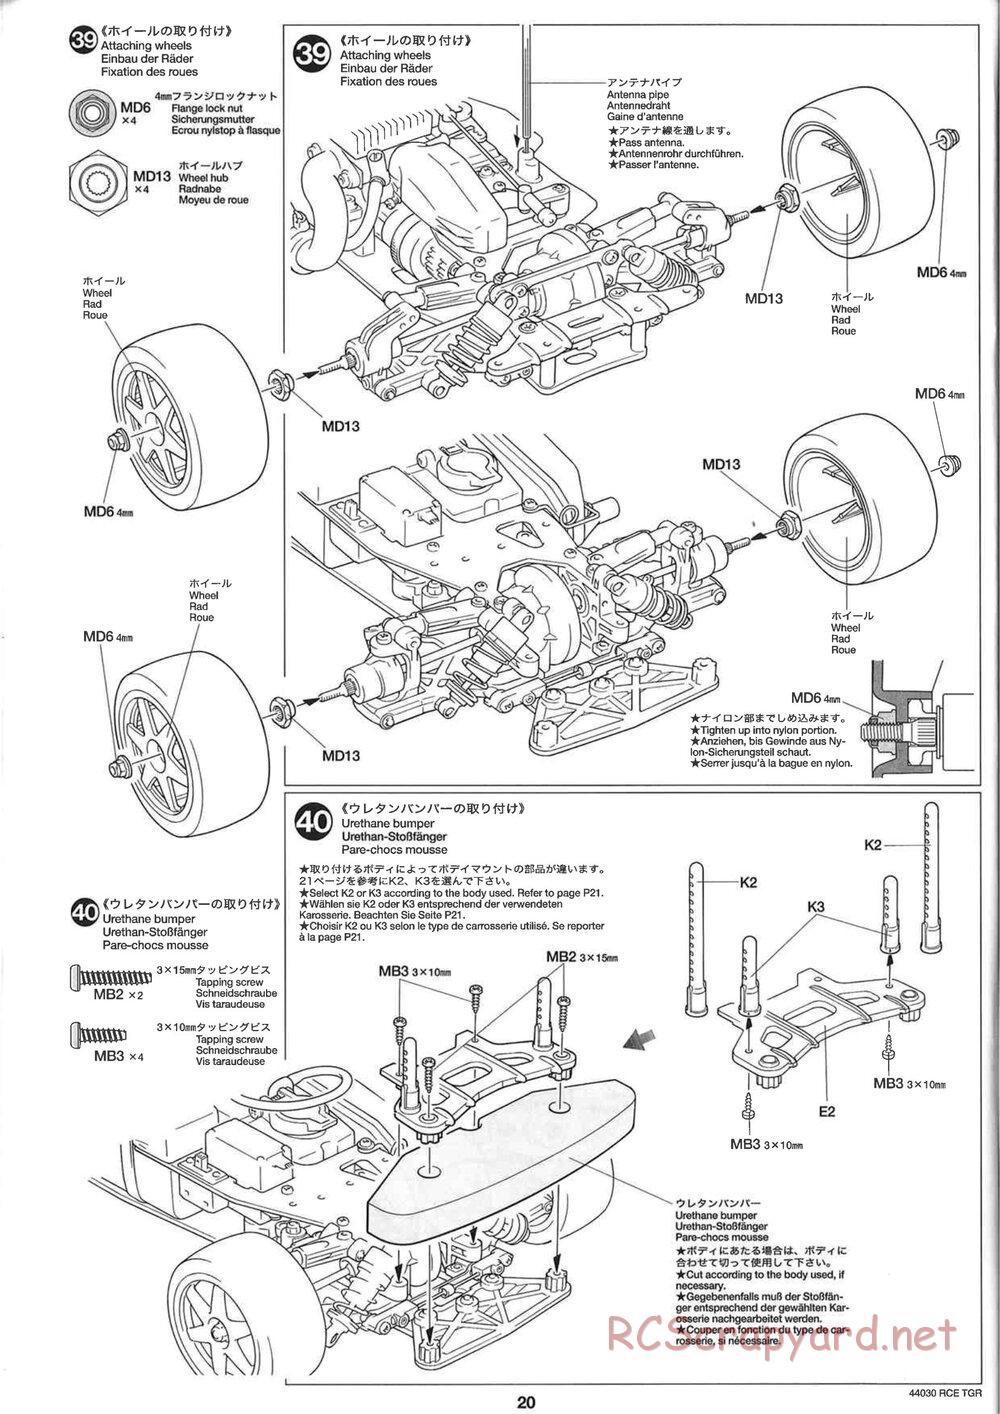 Tamiya - TGR Chassis - Manual - Page 20